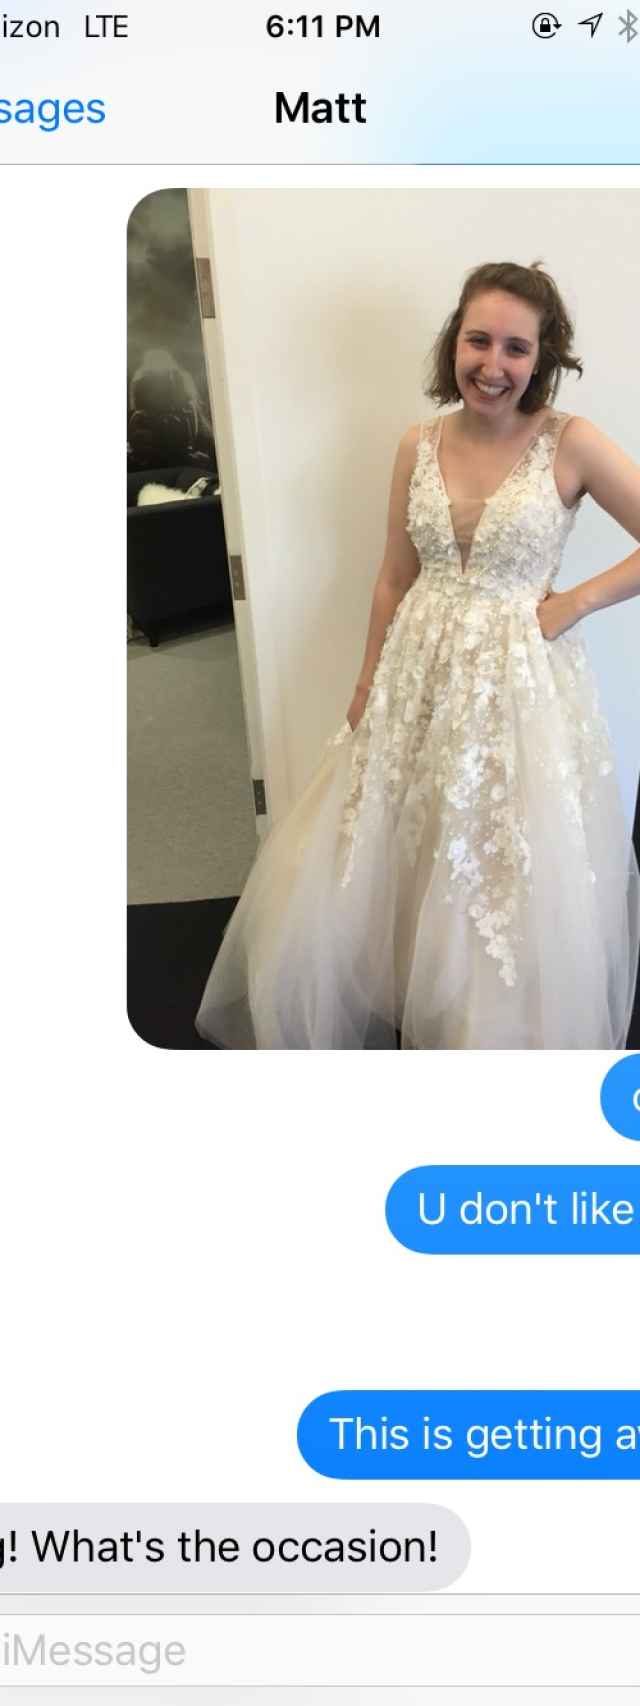 Cómo reaccionaría tu pareja si le mandases una foto vestida de novia?